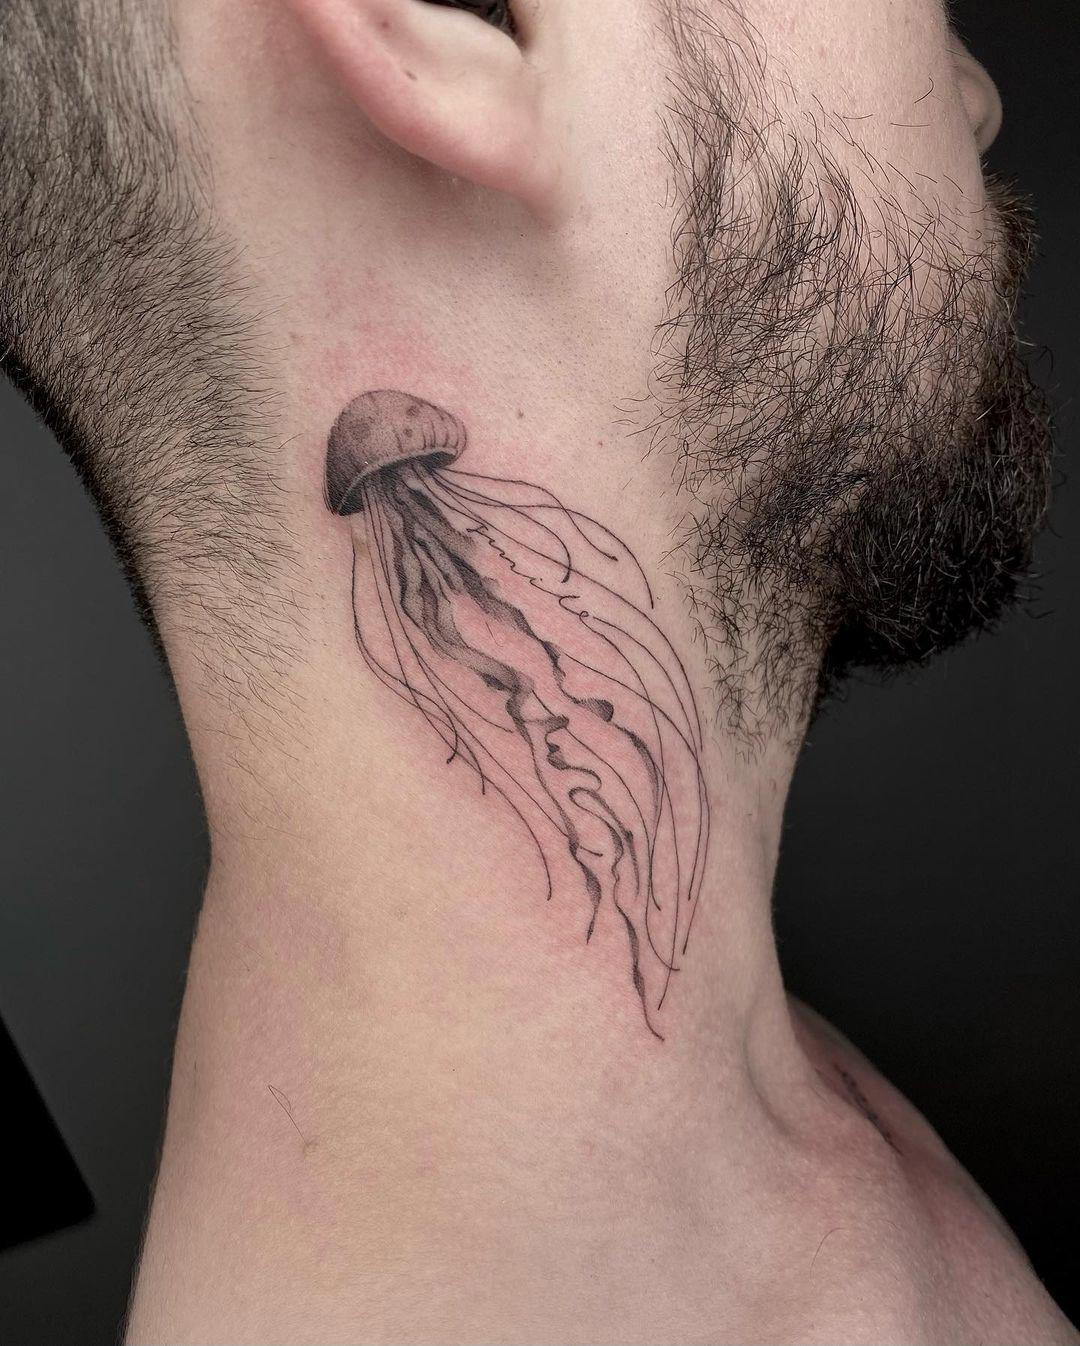 Medusa y palabra tatuadas en el cuello